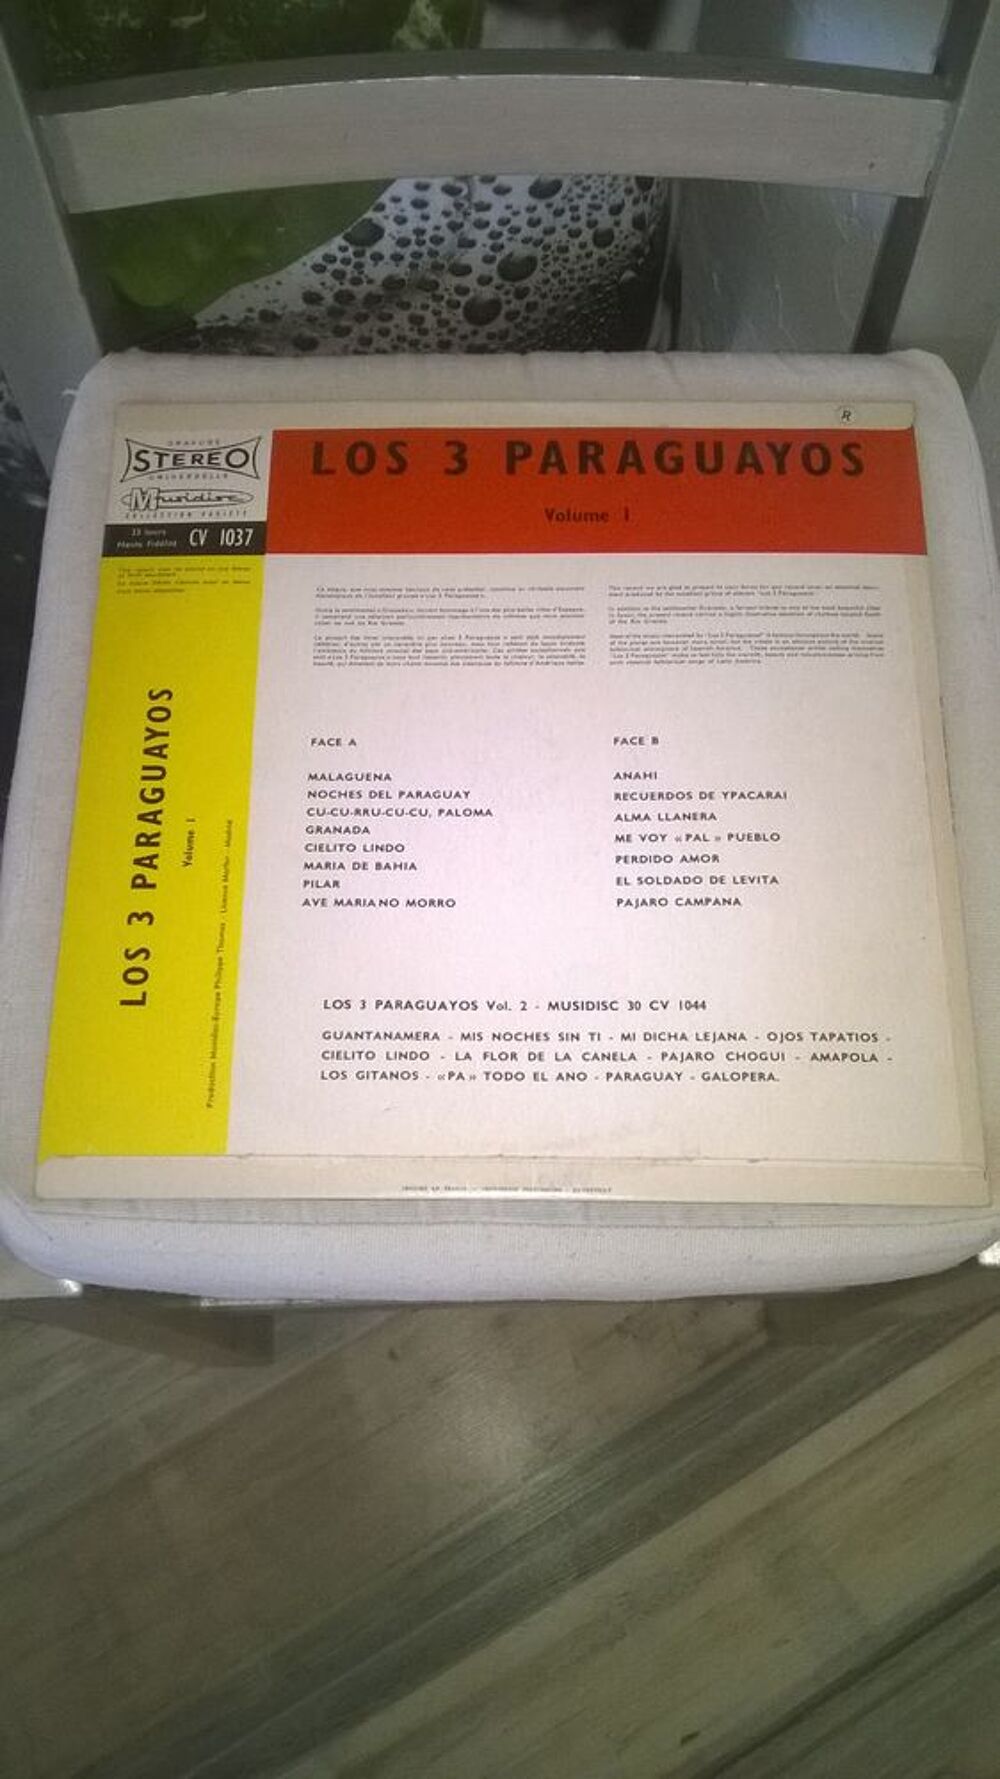 Vinyle Los 3 Paraguayos
Volume 1
Excellent etat
Malaguena CD et vinyles